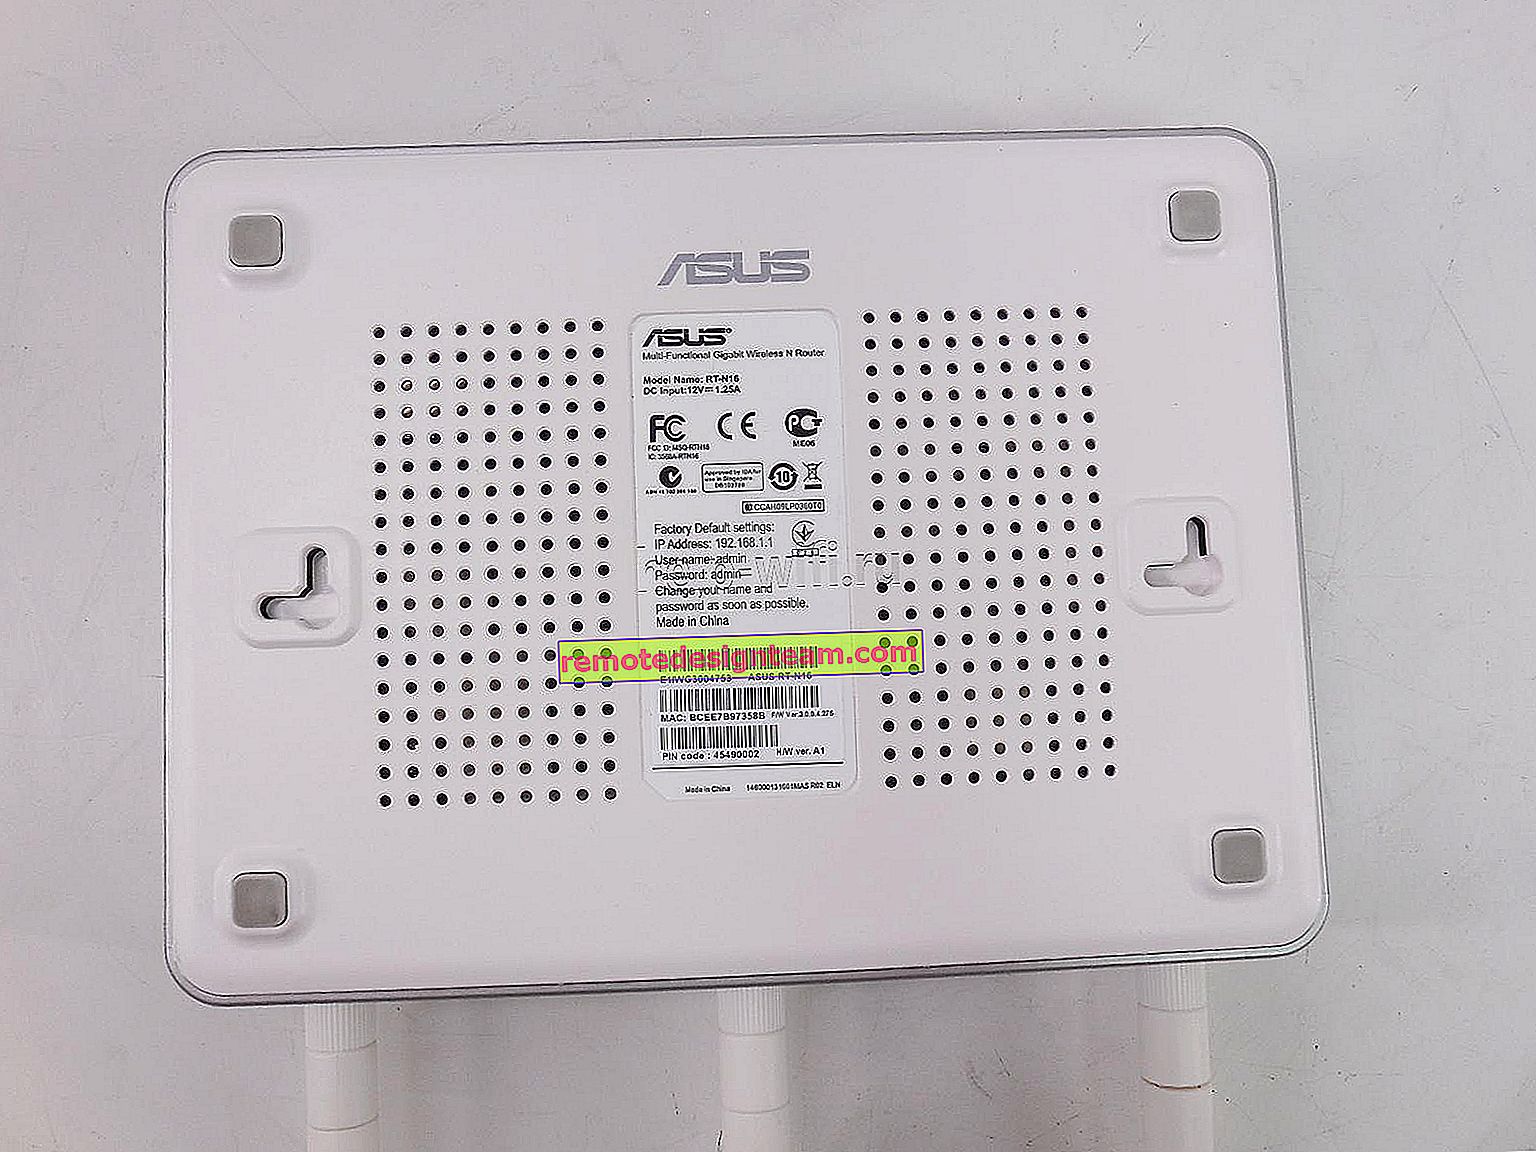 Memasuki pengaturan pada router Asus (192.168.1.1)